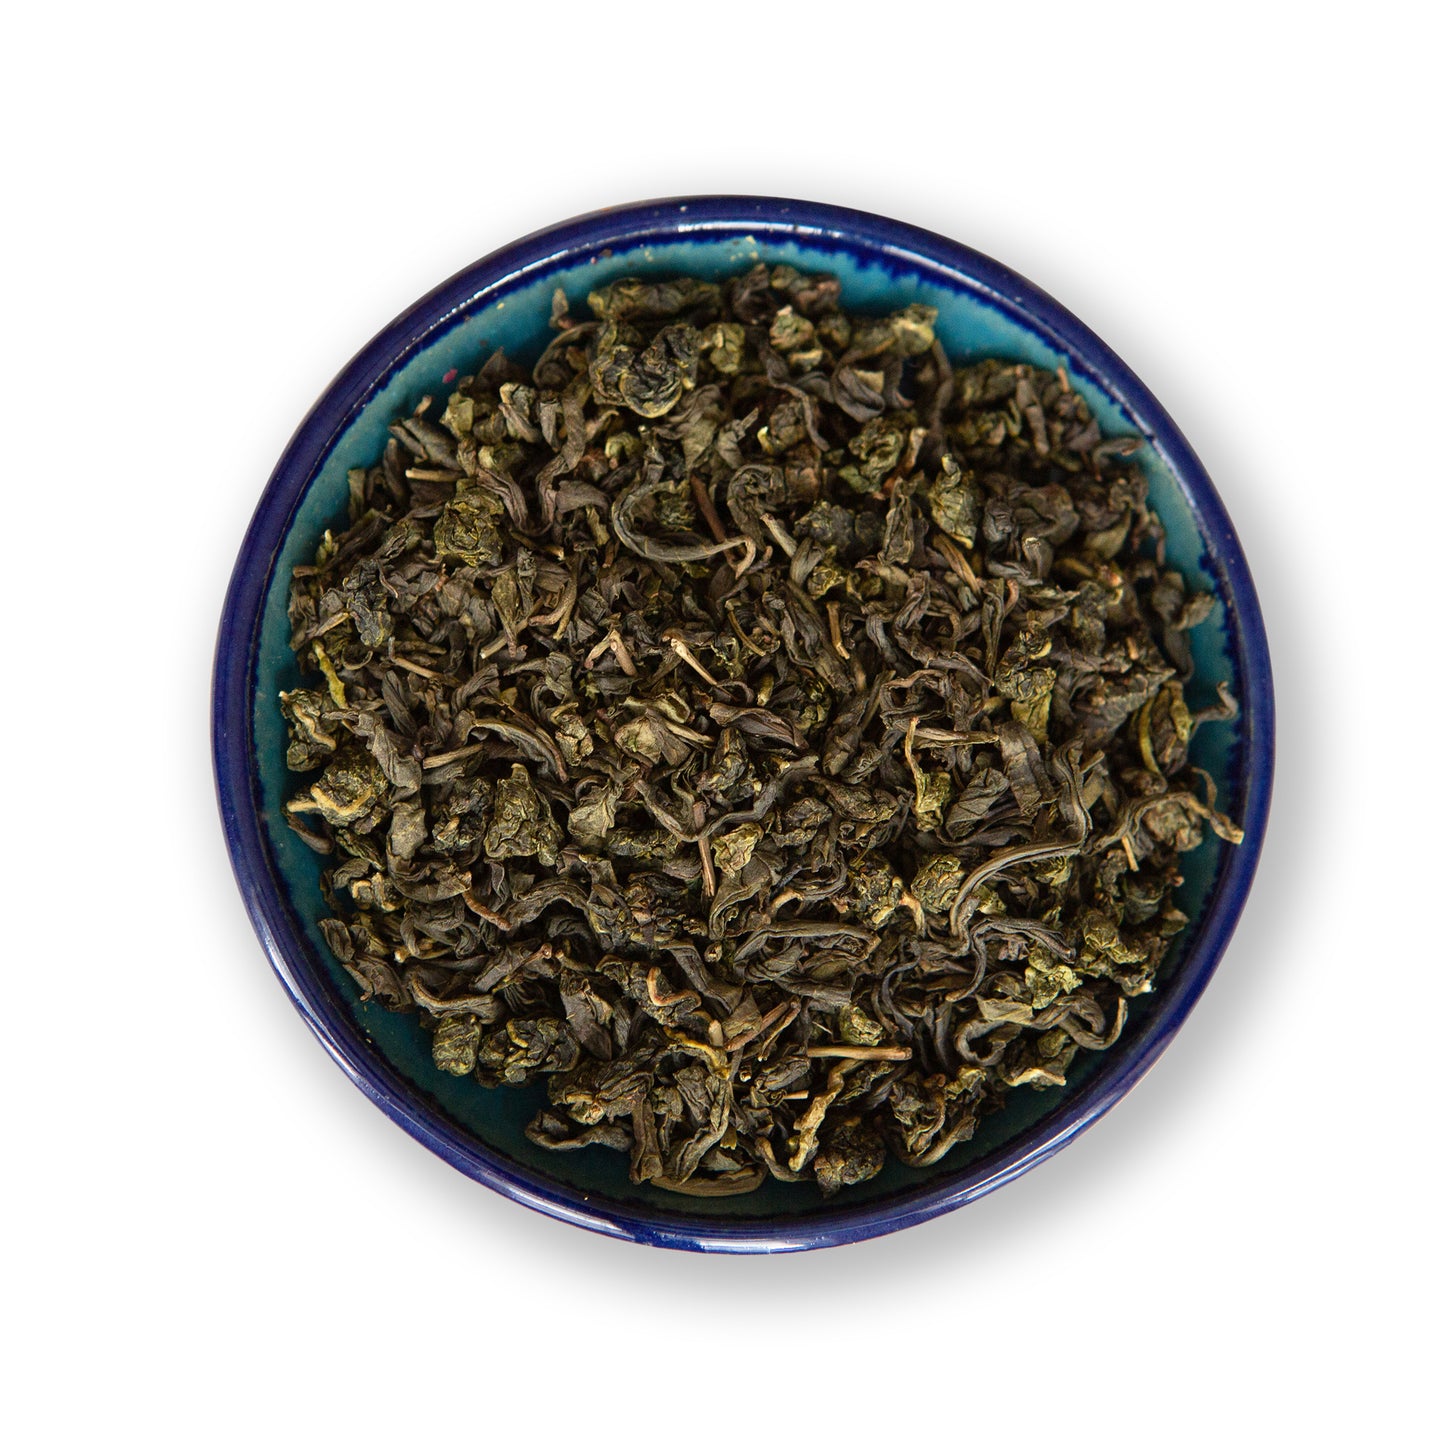 Organic Slimming Jasmine Loose Leaf Green Tea and Oolong Tea Blend, Loose Tea